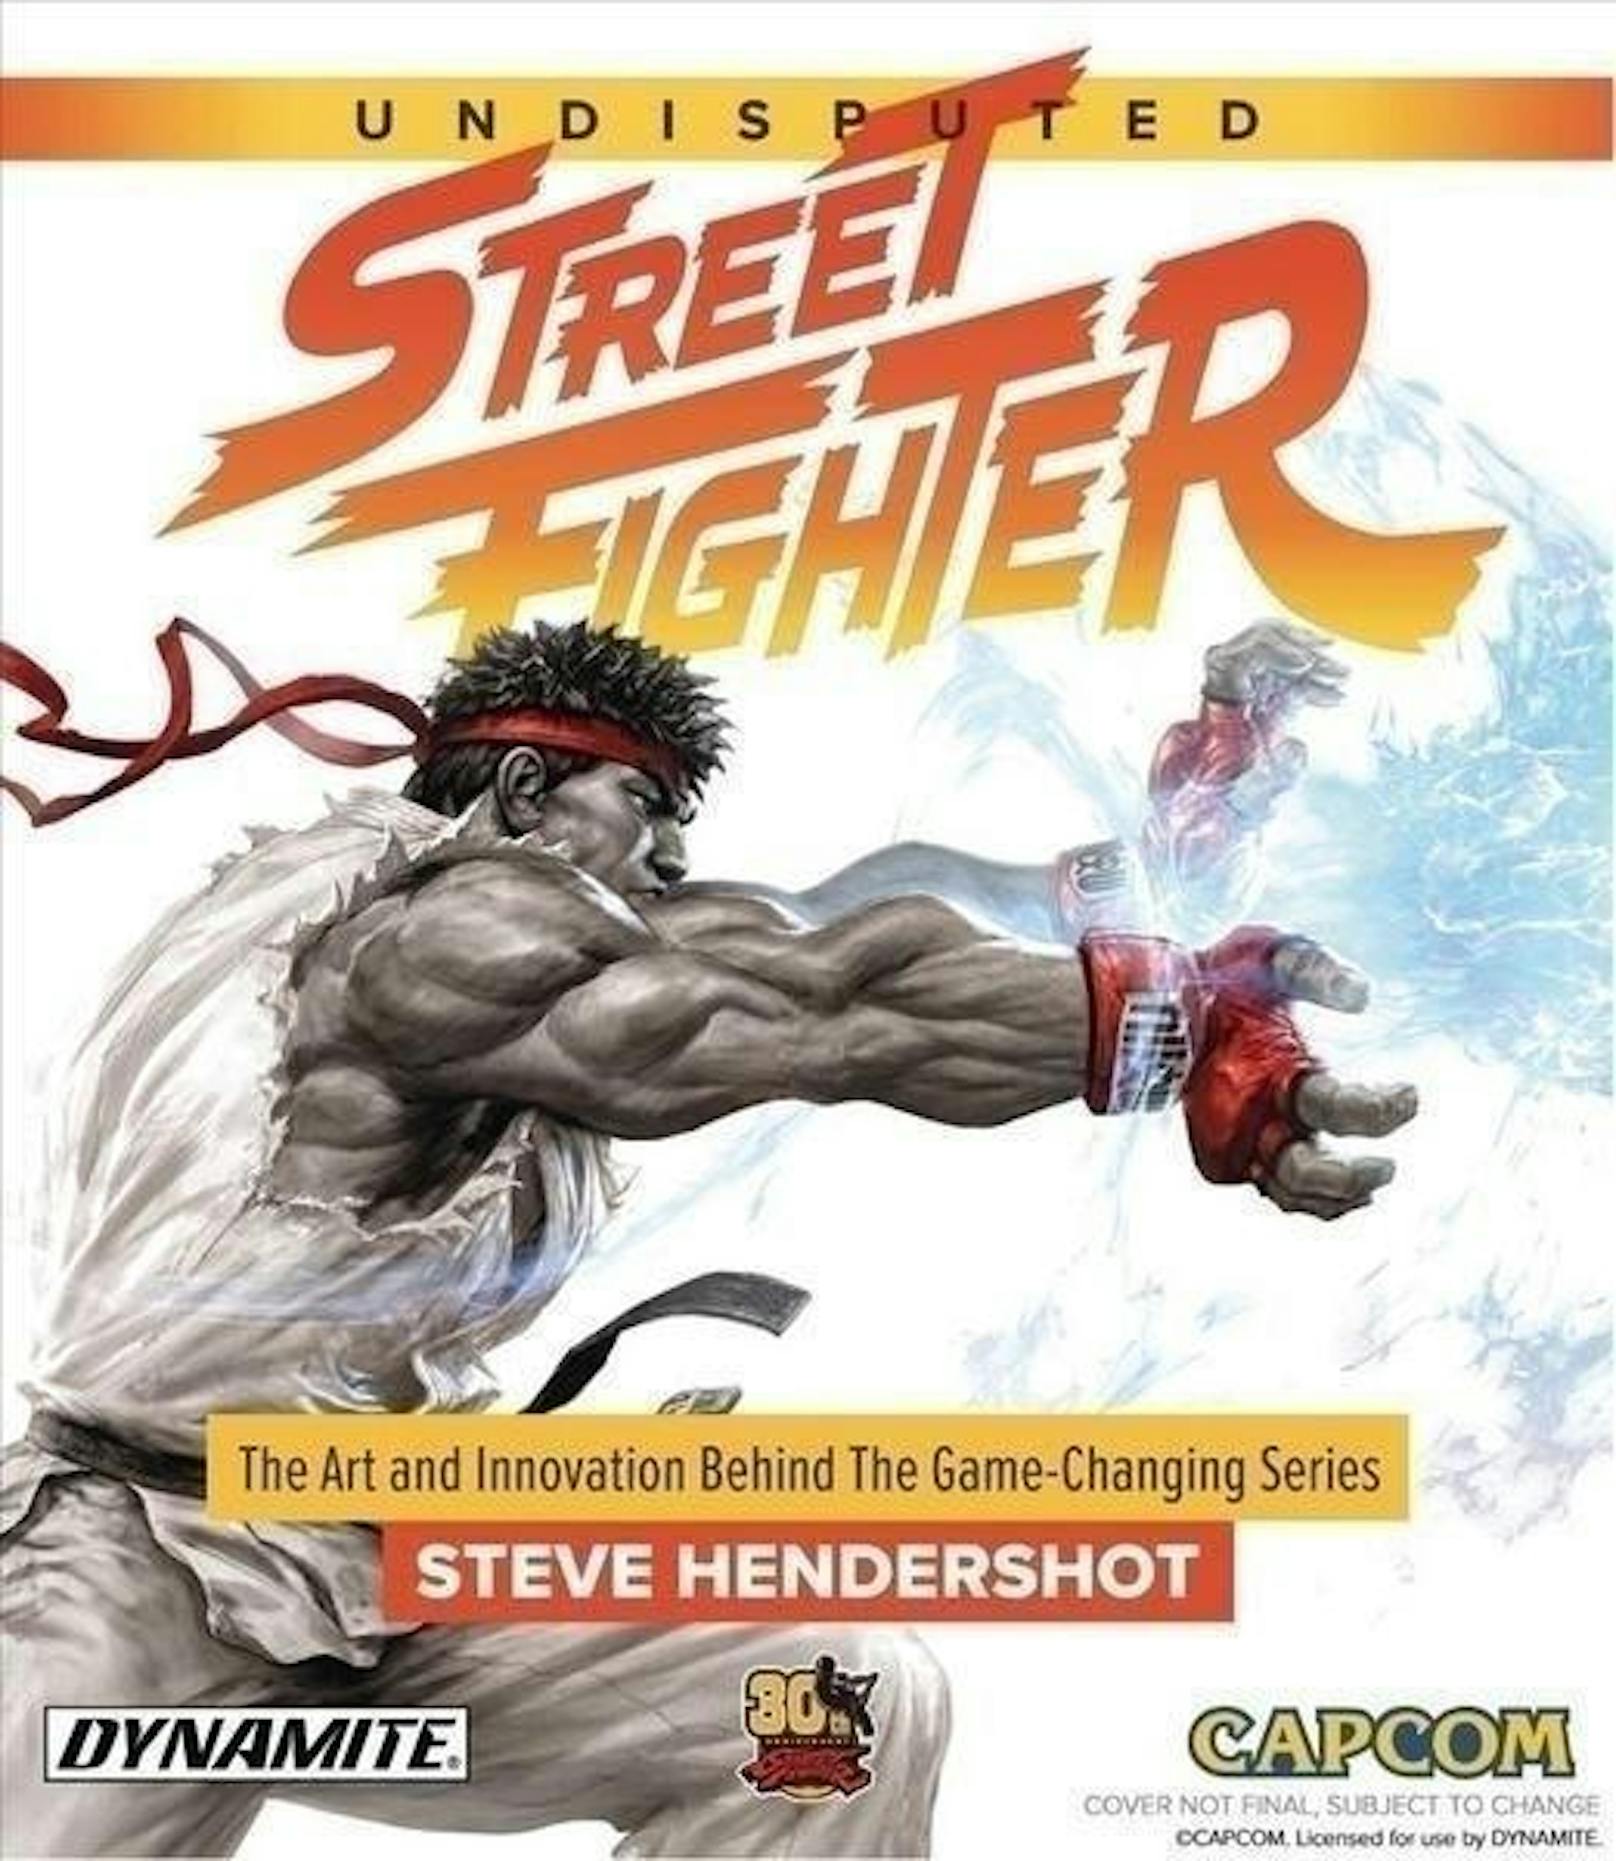 Ein Must-have für Fans des Prügelklassikers. Das Buch rekapituliert 30 Jahre "Street Fighter", einer Serie, die aus der Geschichte der Videospiele nicht mehr wegzudenken ist. Auf den rund 300 Seiten werden das Storytelling, das Gameplay, das Design und einzelne Figuren wie Ryu oder Ken beleuchtet. Auch exklusive Interviews und Einblicke in die Entstehung sind zwischen den Buchdeckeln zu finden.
<b>Steve Hendershot: "Undisputed Street Fighter", Gardner Books, 304 Seiten, Englisch, 38,96 Euro</b>